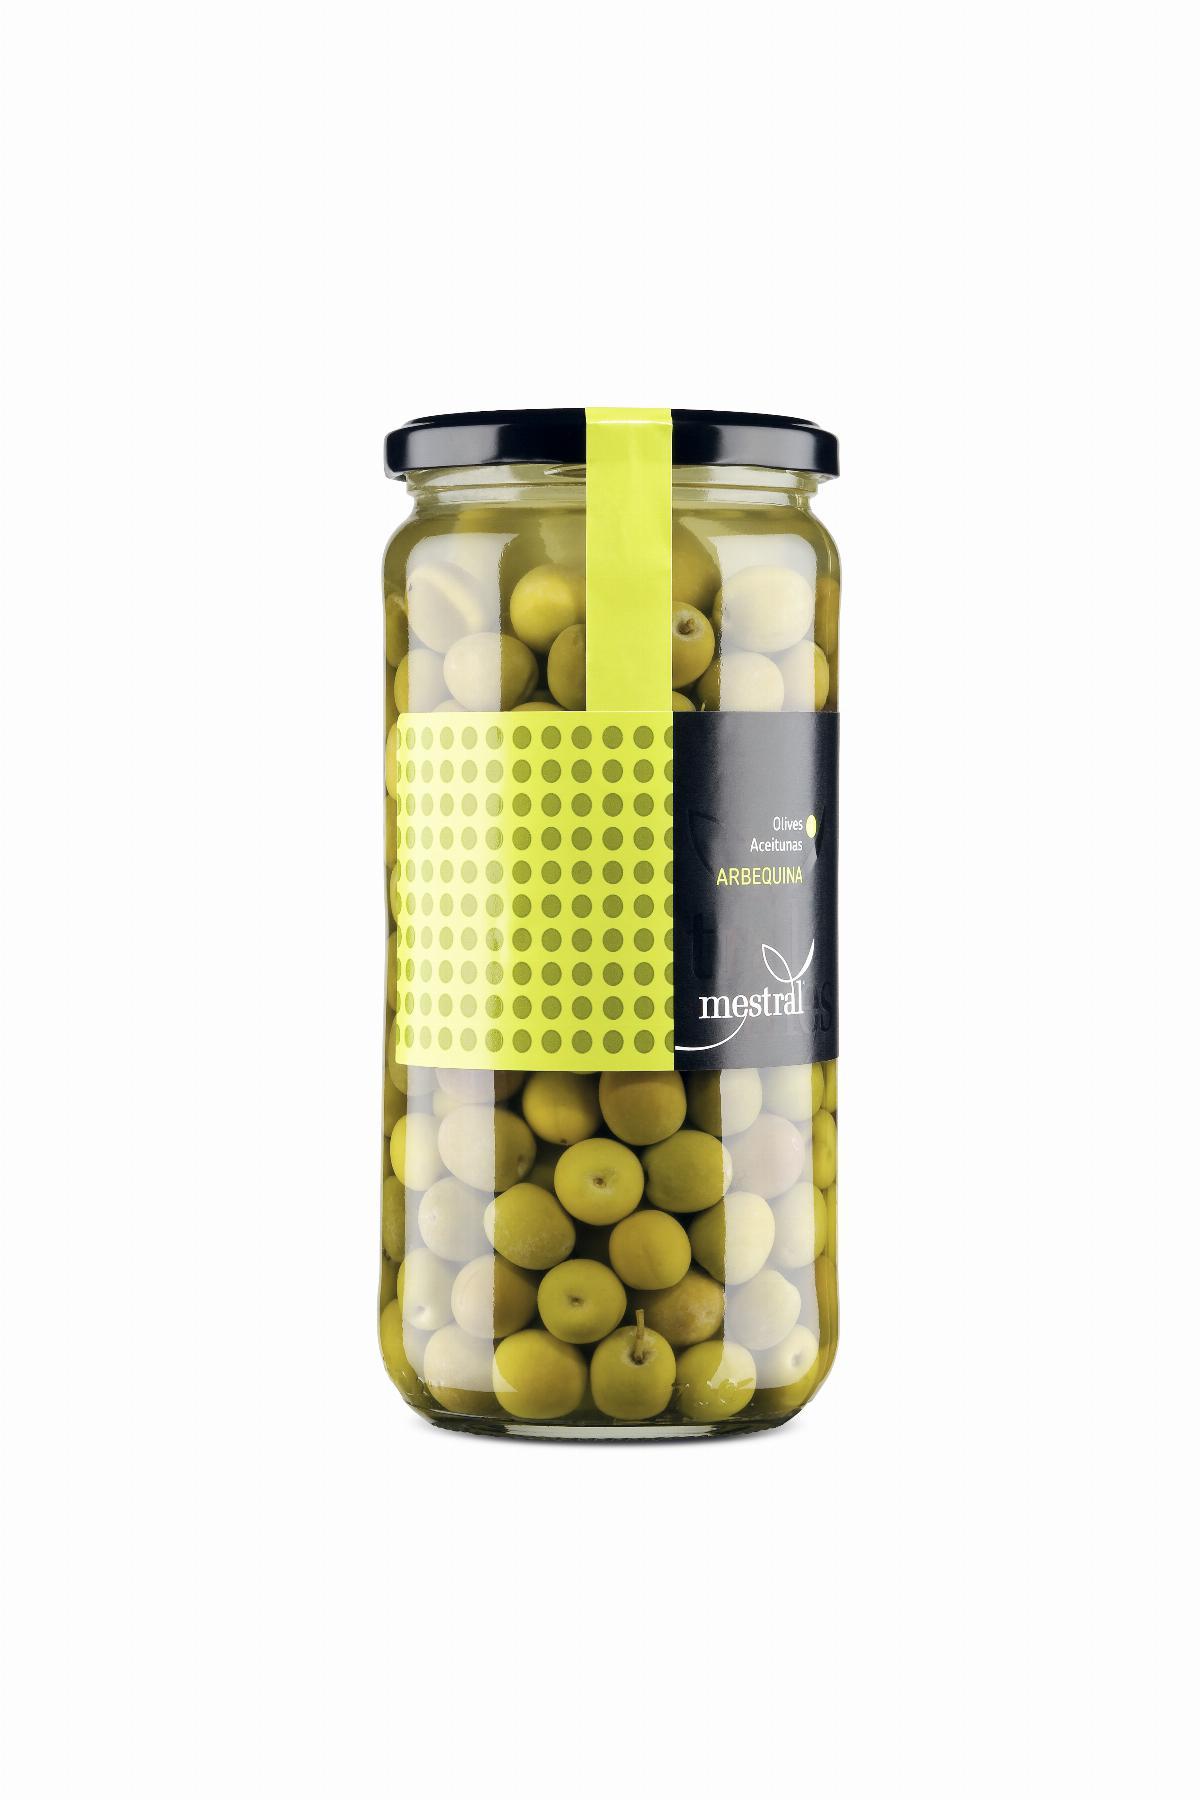 Olives - Olives Arbequines Mestral pot en verre 440g - Mestral Cambrils